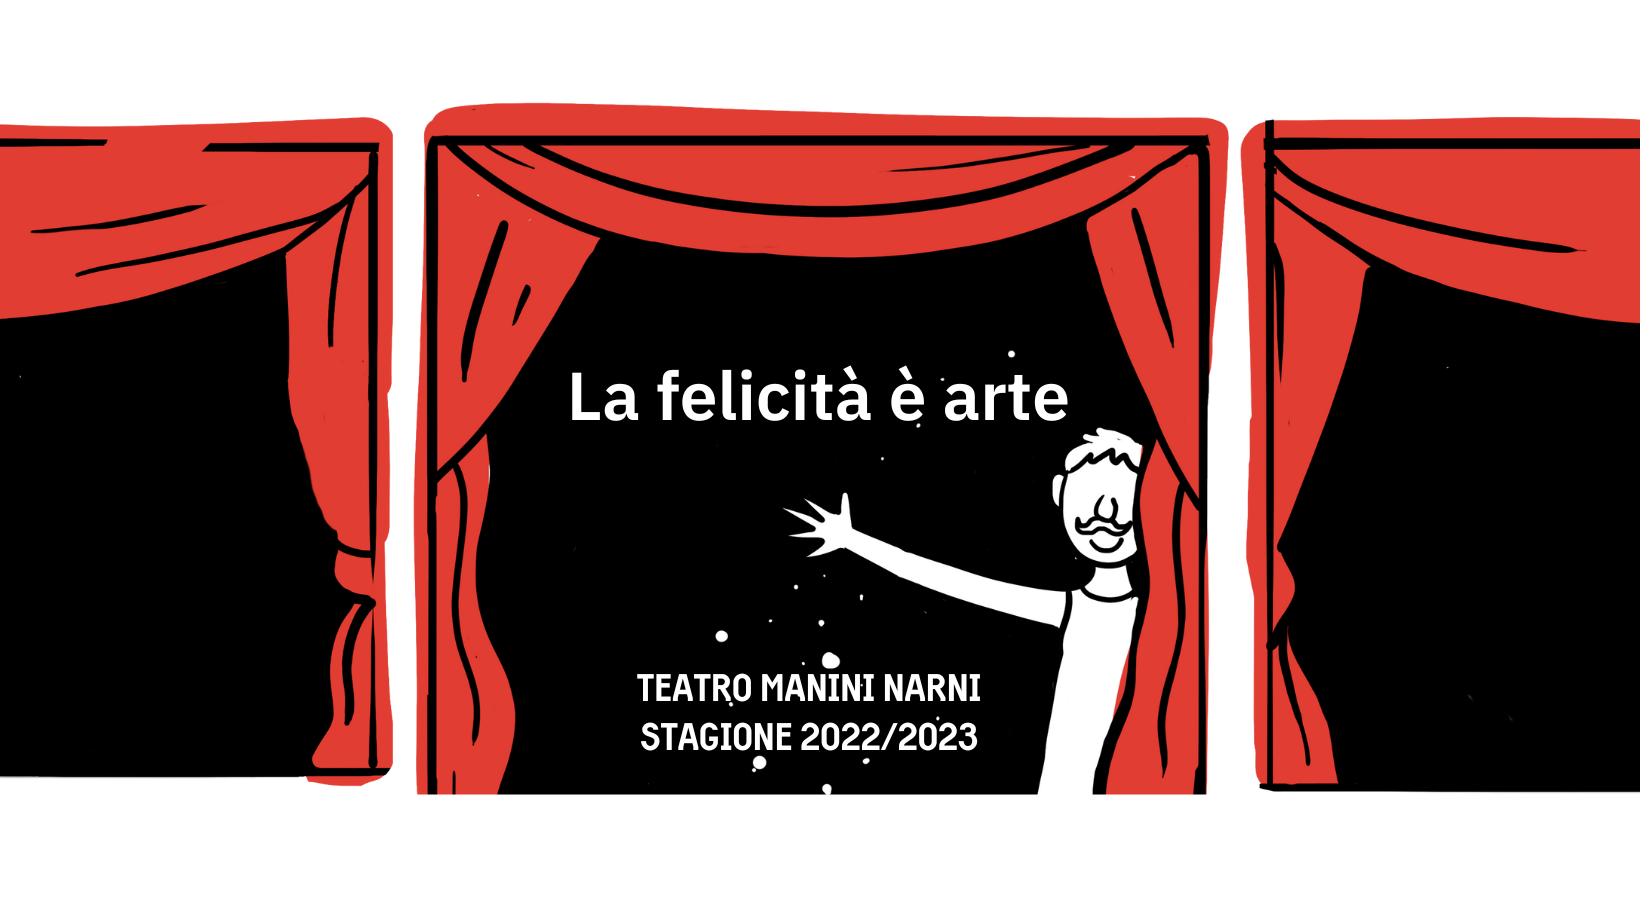 Stagione 2022/2023 del Teatro Manini